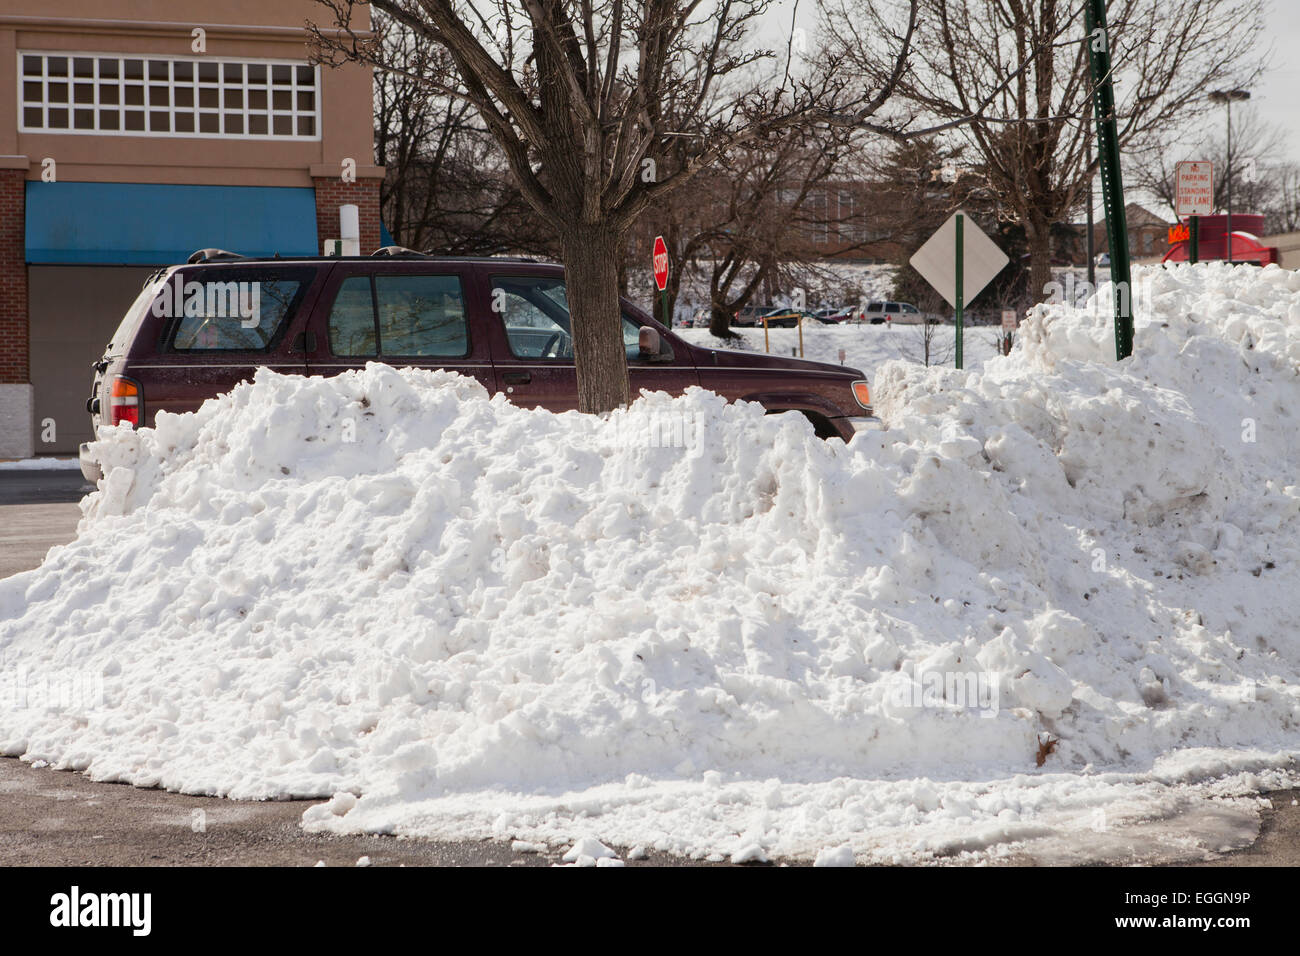 Snow pile on parking lot - Virginia USA Stock Photo - Alamy